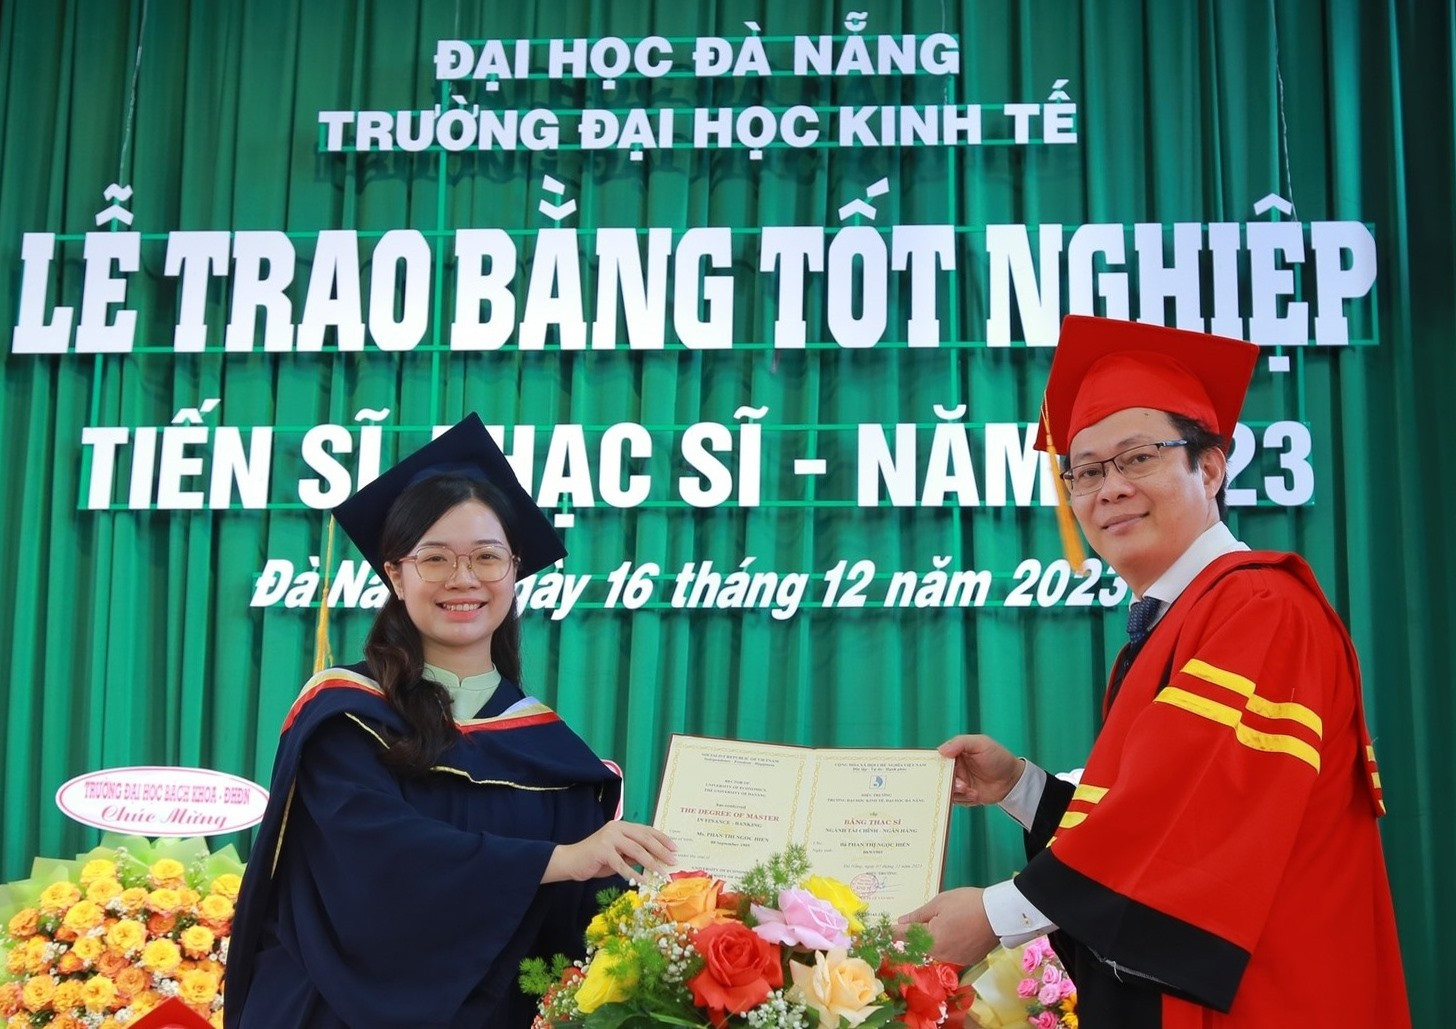 <strong>Đại học Kinh tế Đà Nẵng</strong> Giới thiệu, ngành học, đào tạo và cơ hội việc làm